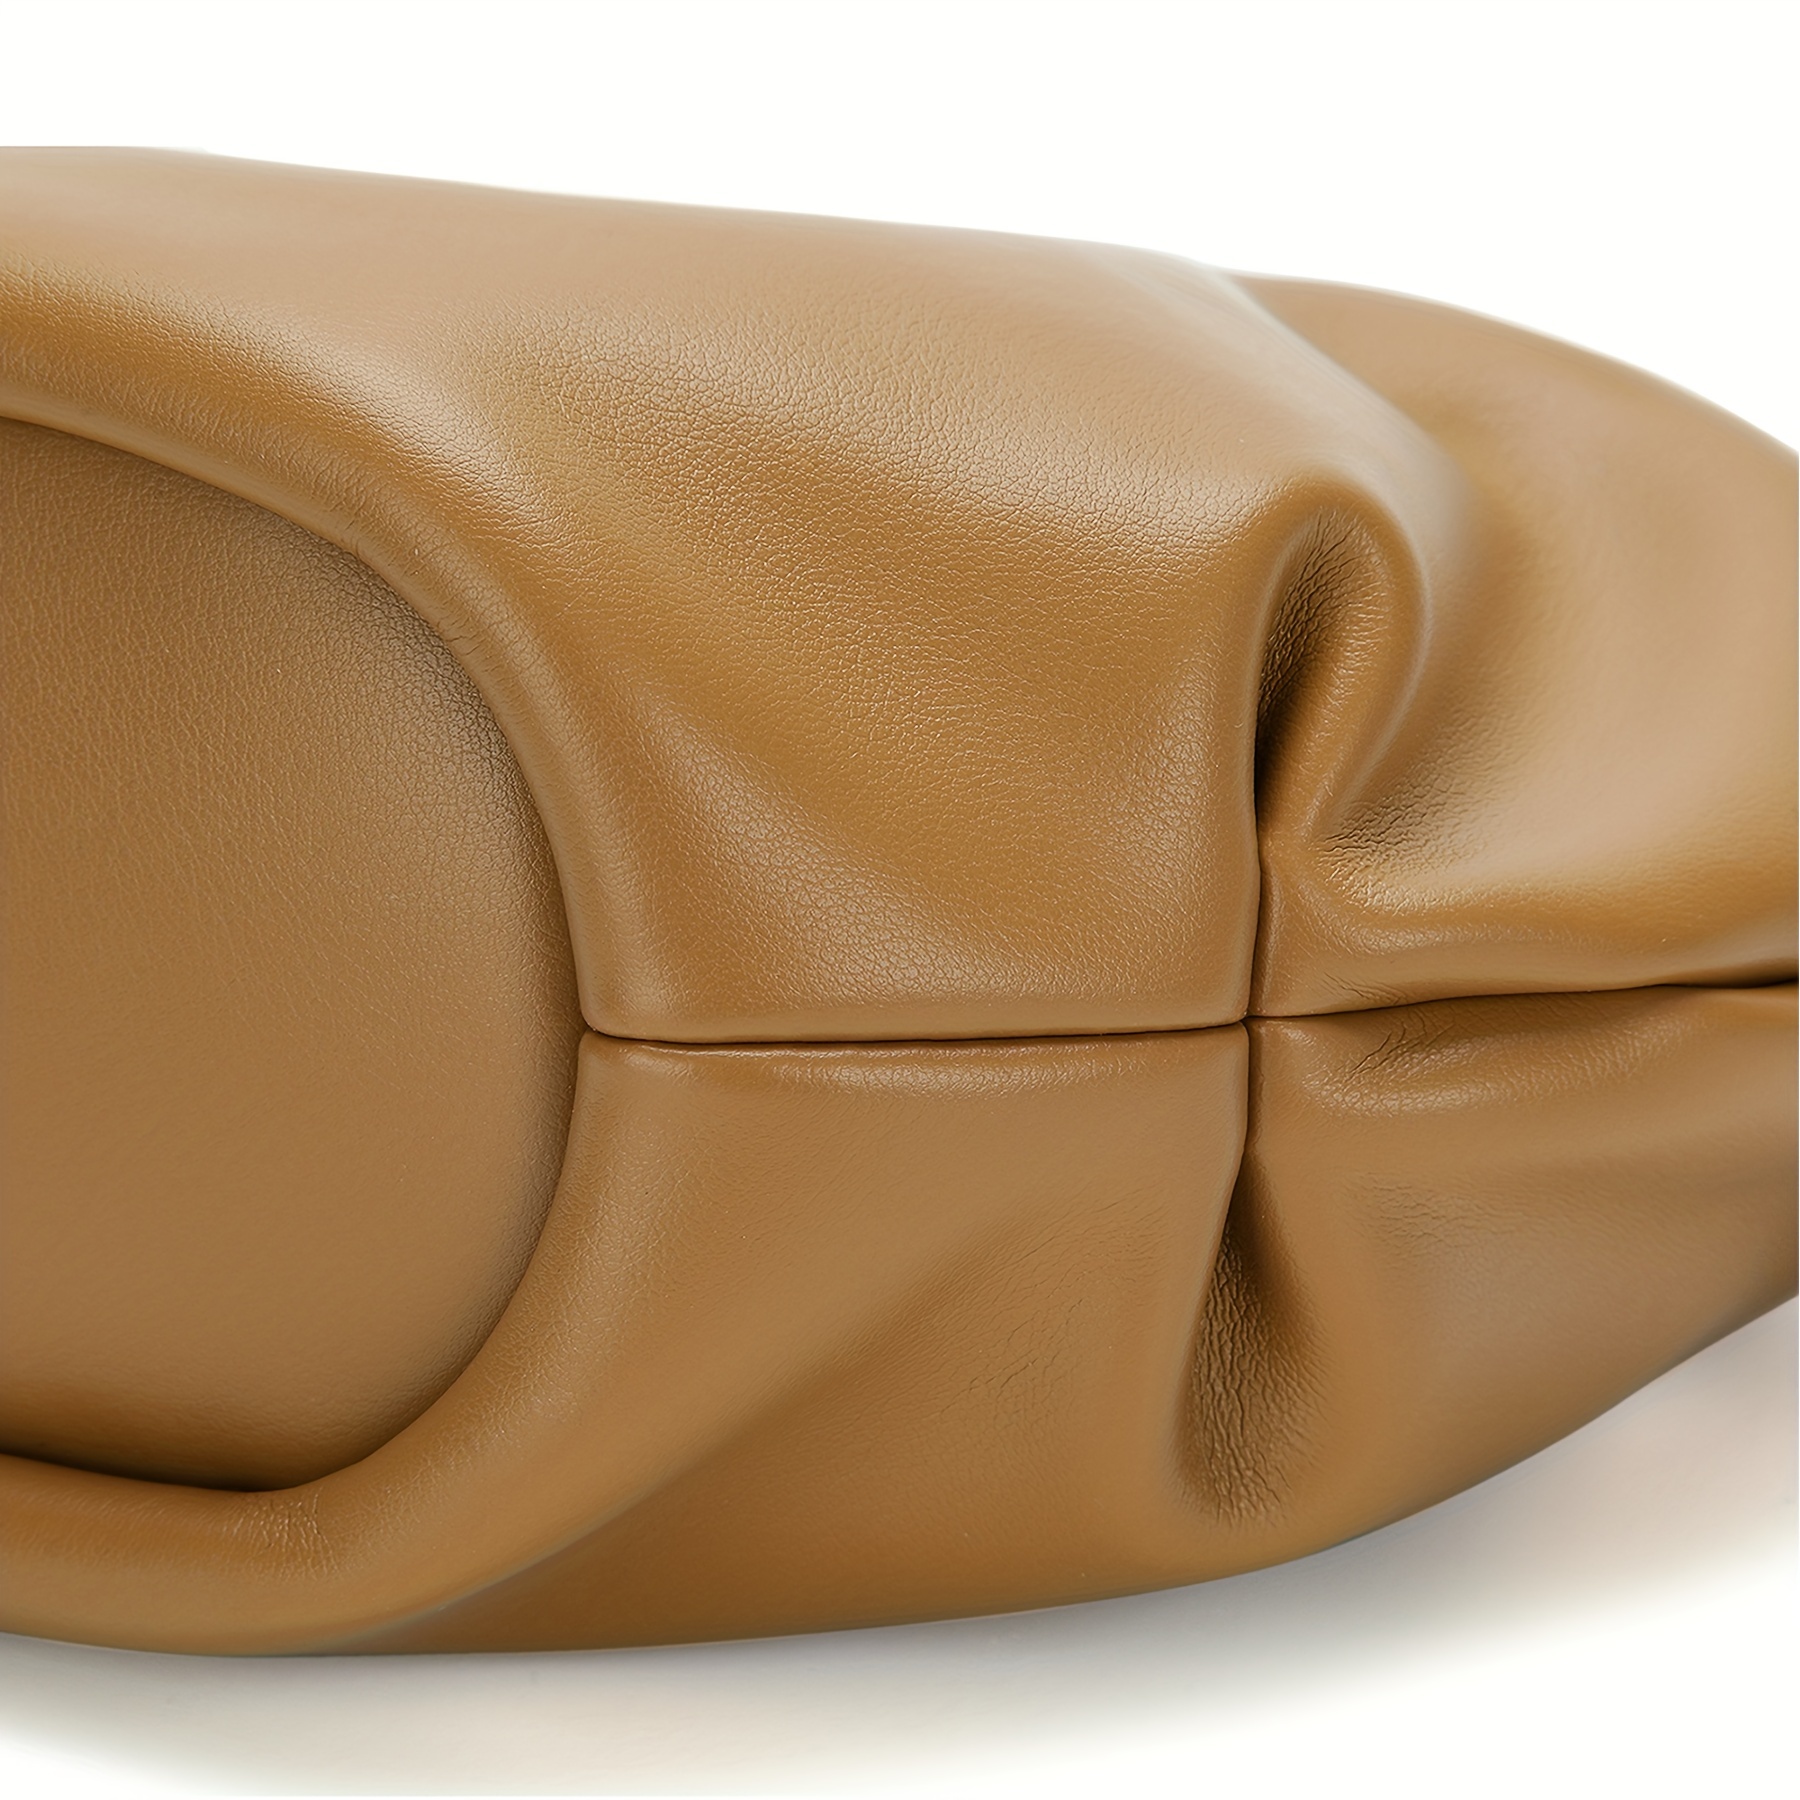 Prada - Women's Medium Leather Bag Shoulder Bag - Brown - Synthetic